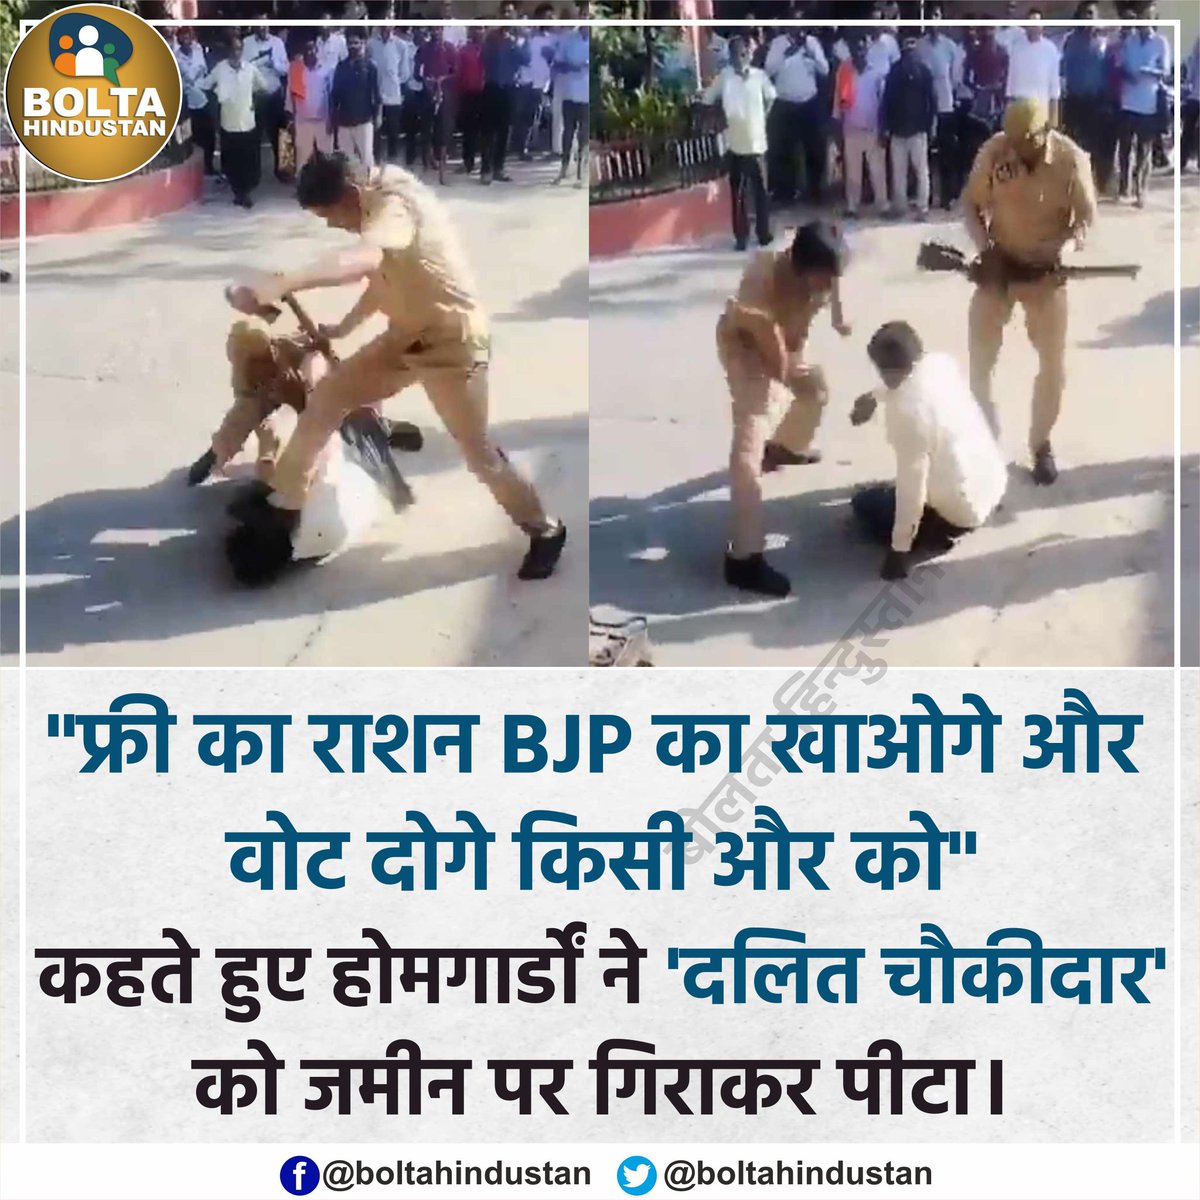 'फ्री का राशन BJP का खाओगे और वोट दोगे किसी और को' कहते हुए होमगार्डों ने 'दलित' को जमीन पर गिराकर पीटा